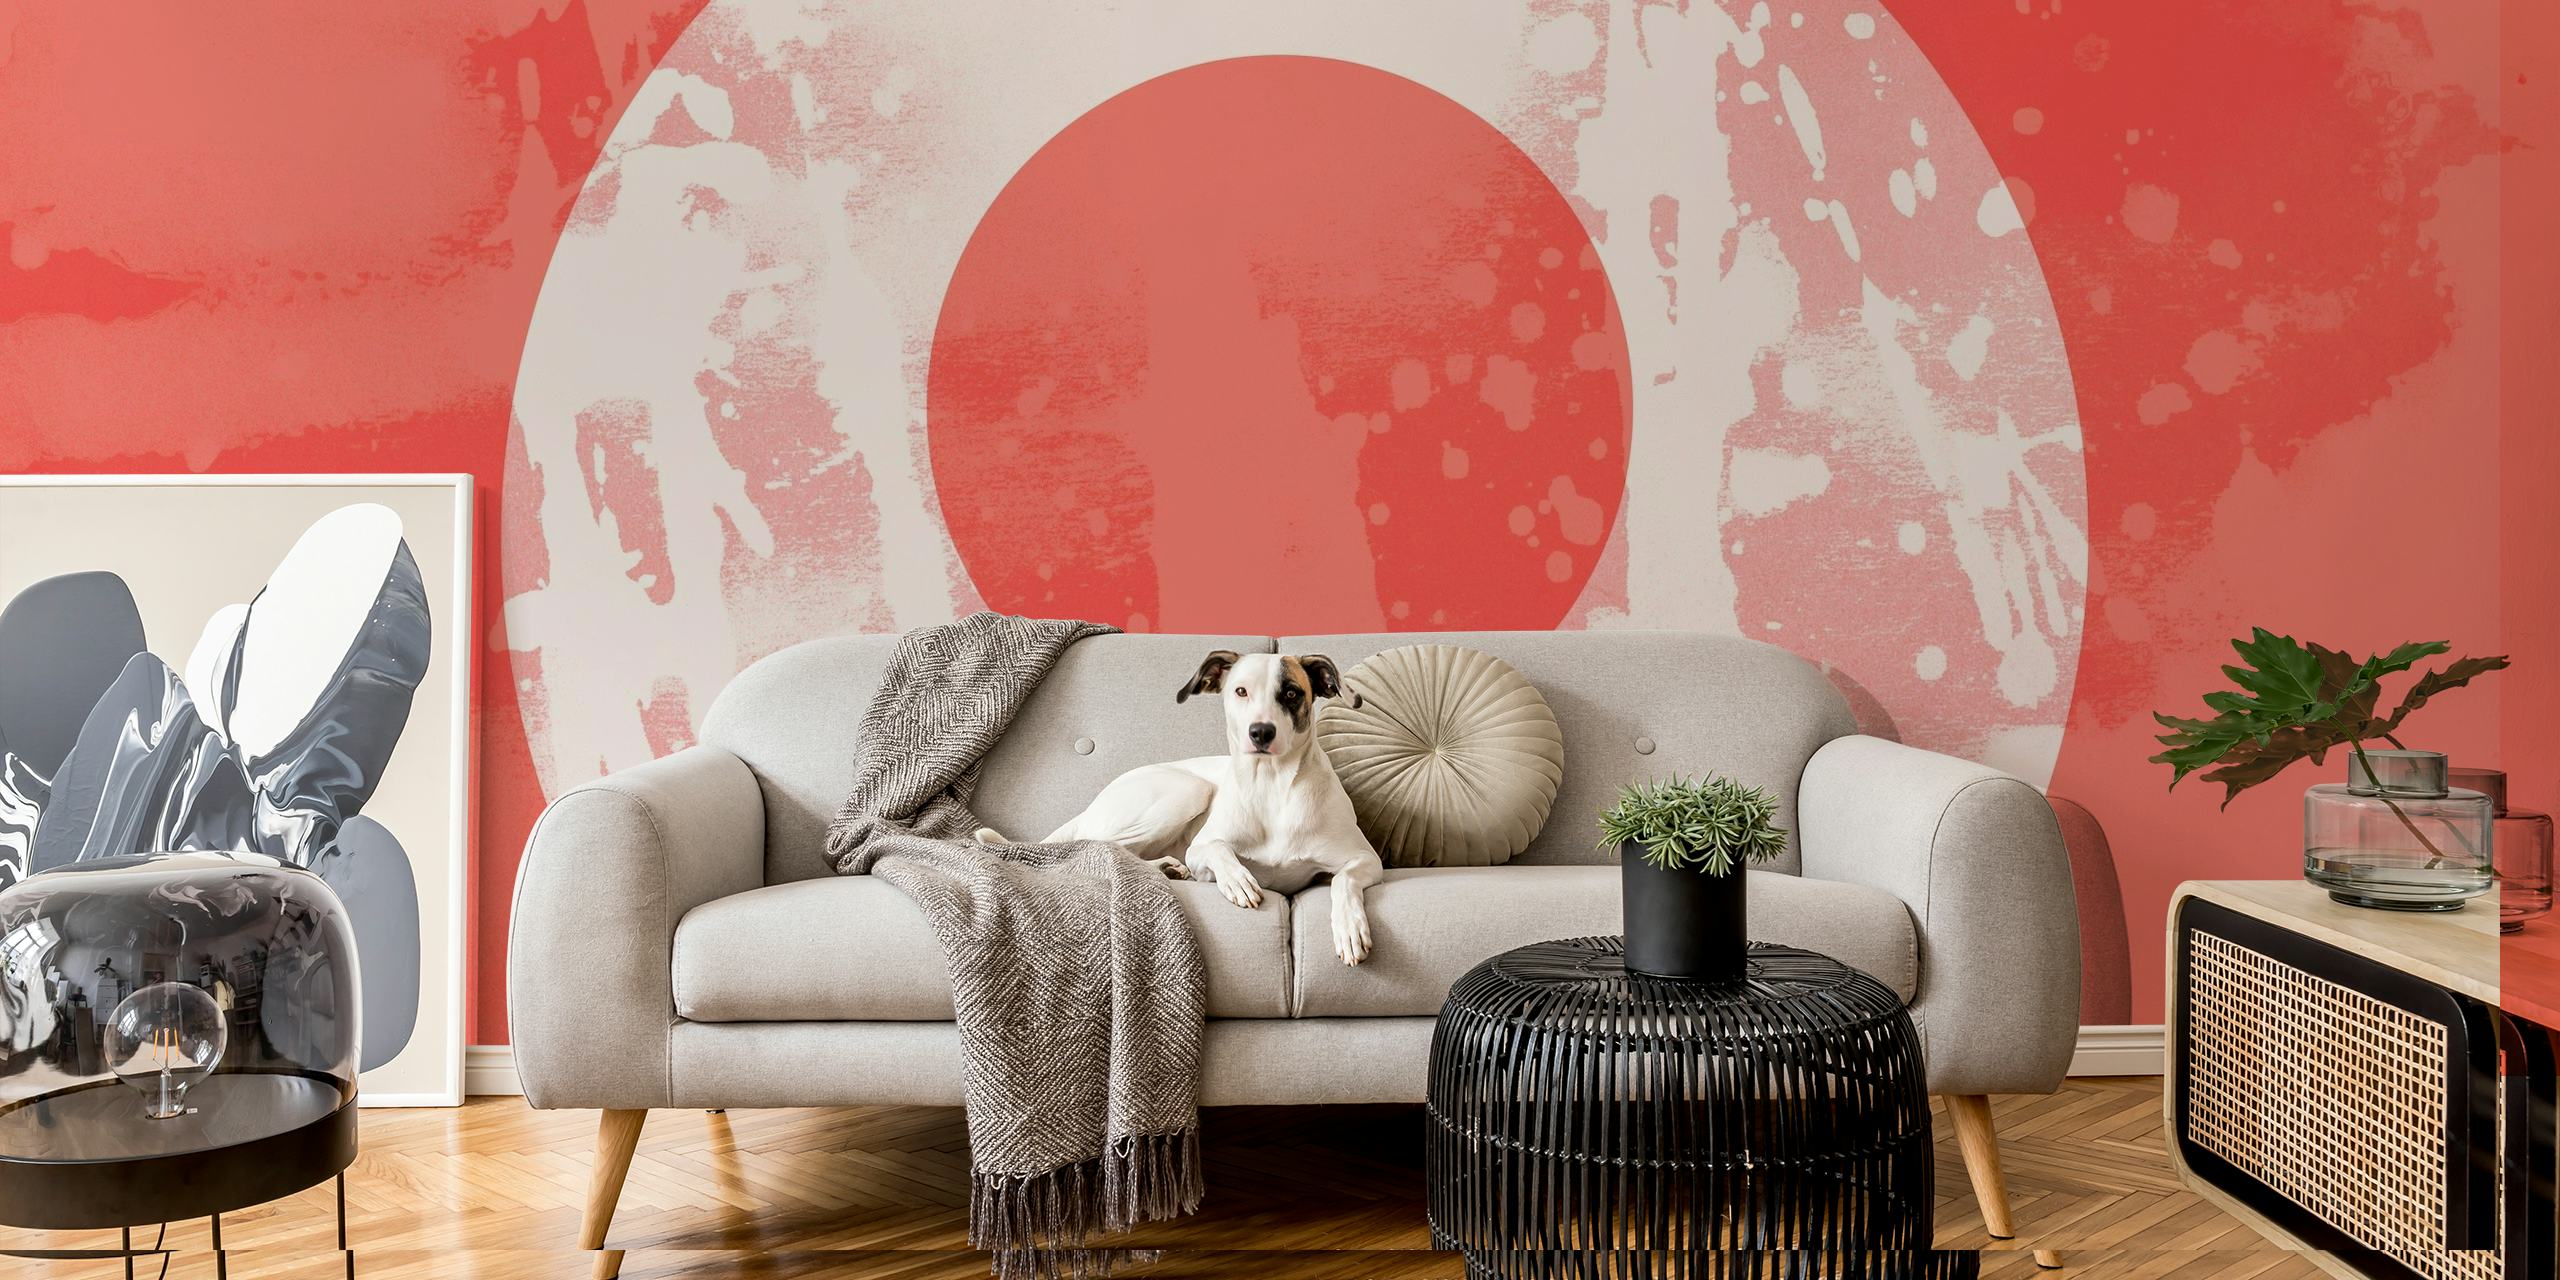 Röd och vit abstrakt skräppolka soluppgång grunge väggmålning